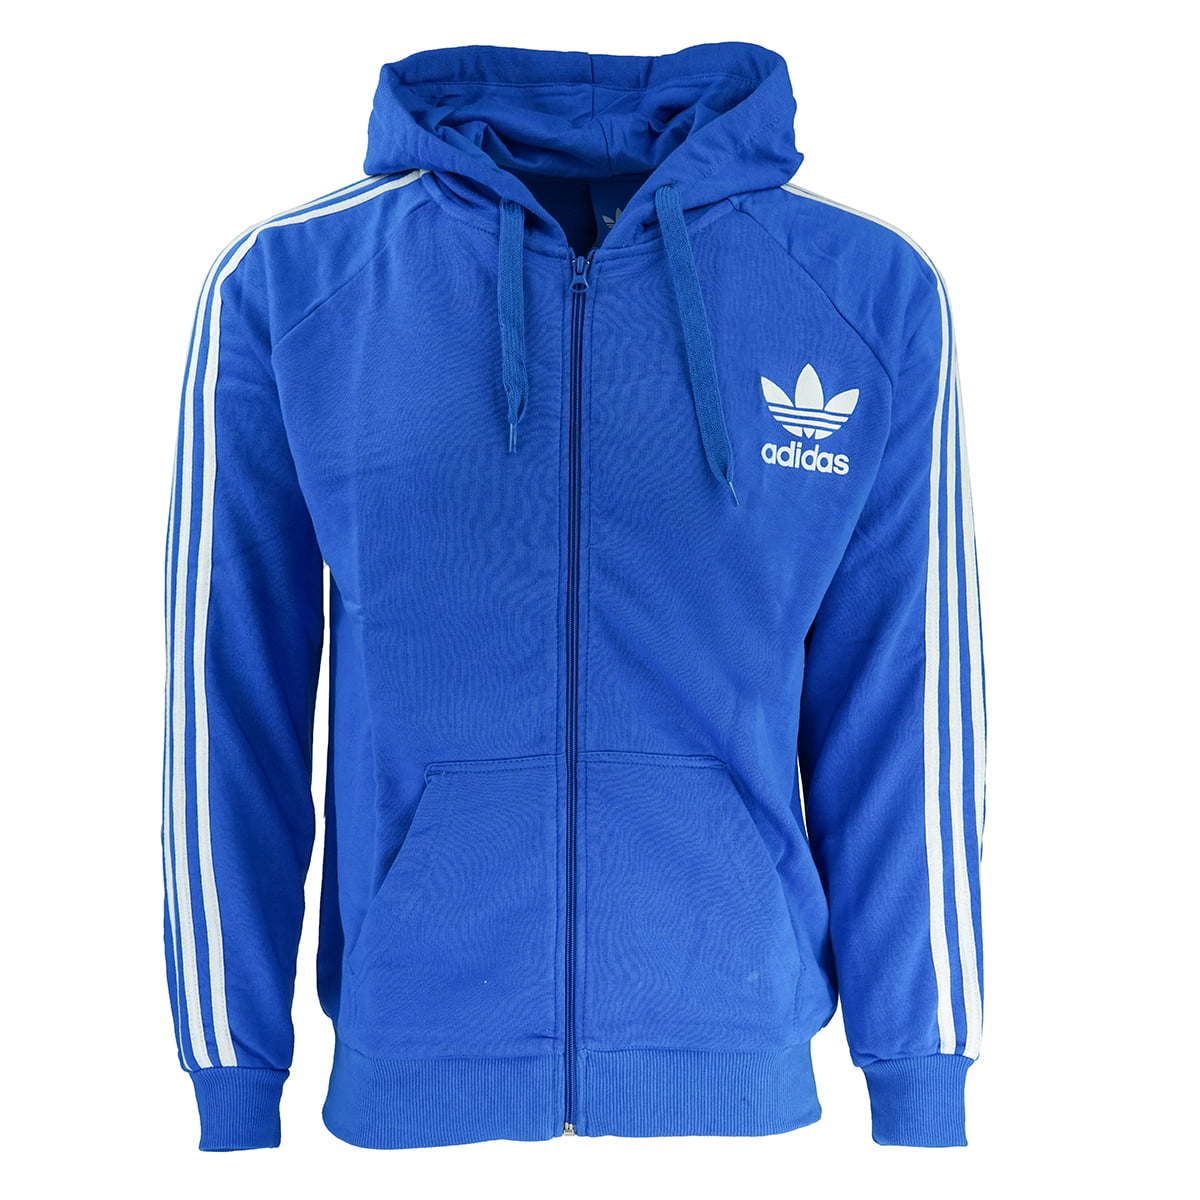 blue adidas zip up jacket